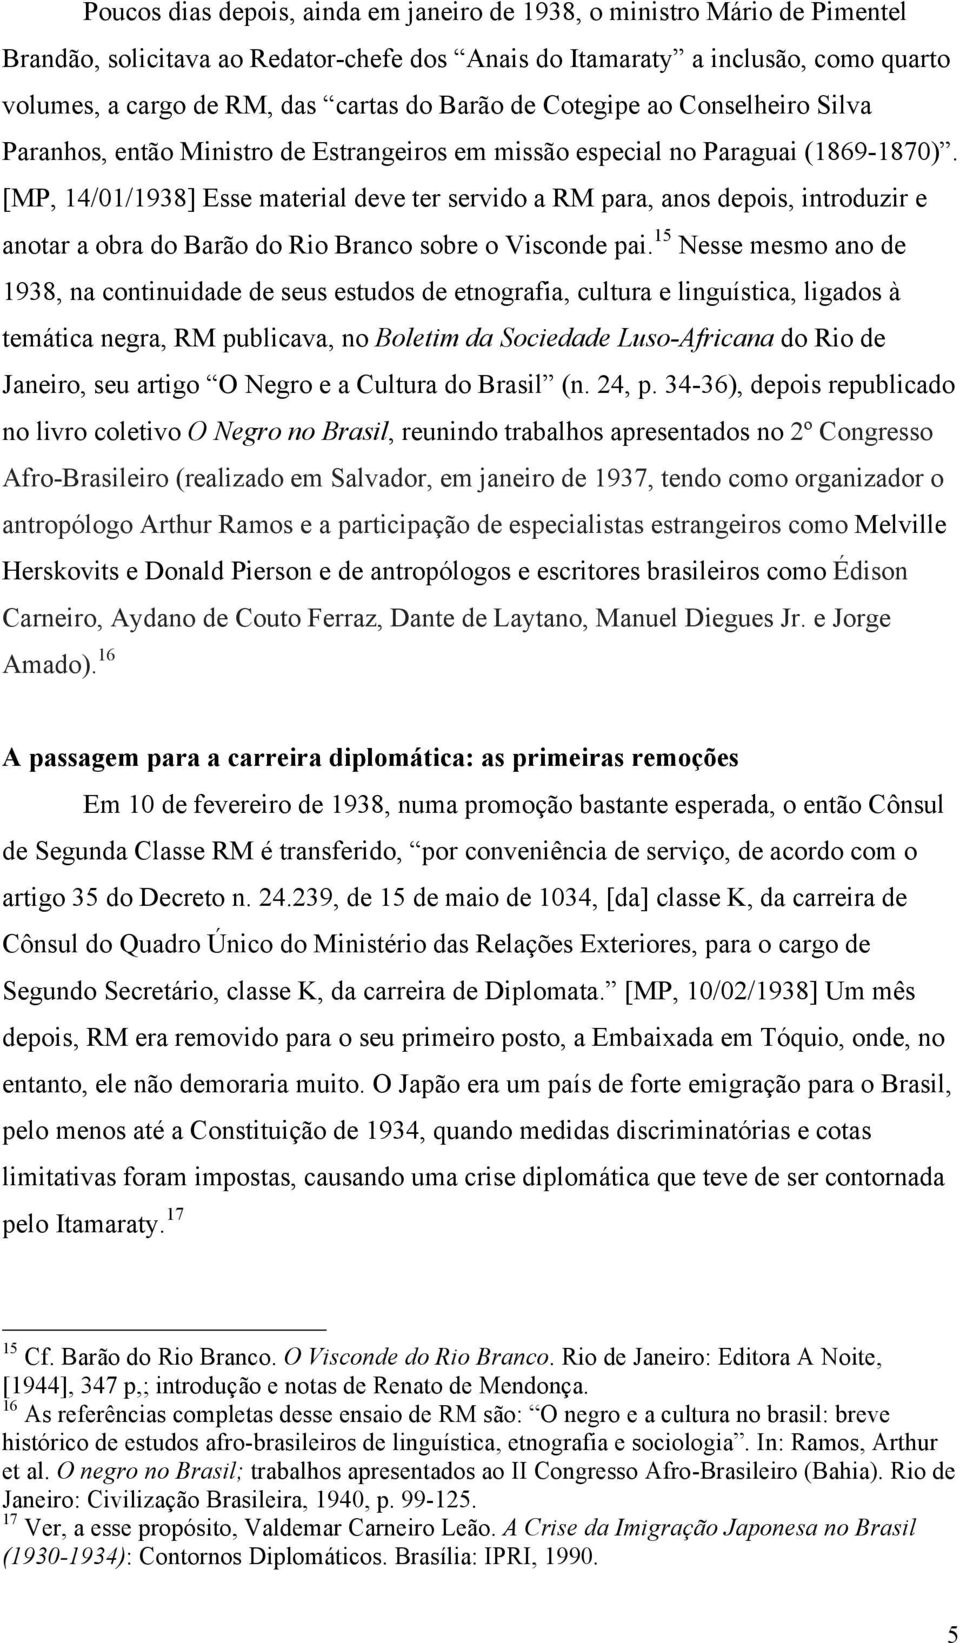 [MP, 14/01/1938] Esse material deve ter servido a RM para, anos depois, introduzir e anotar a obra do Barão do Rio Branco sobre o Visconde pai.